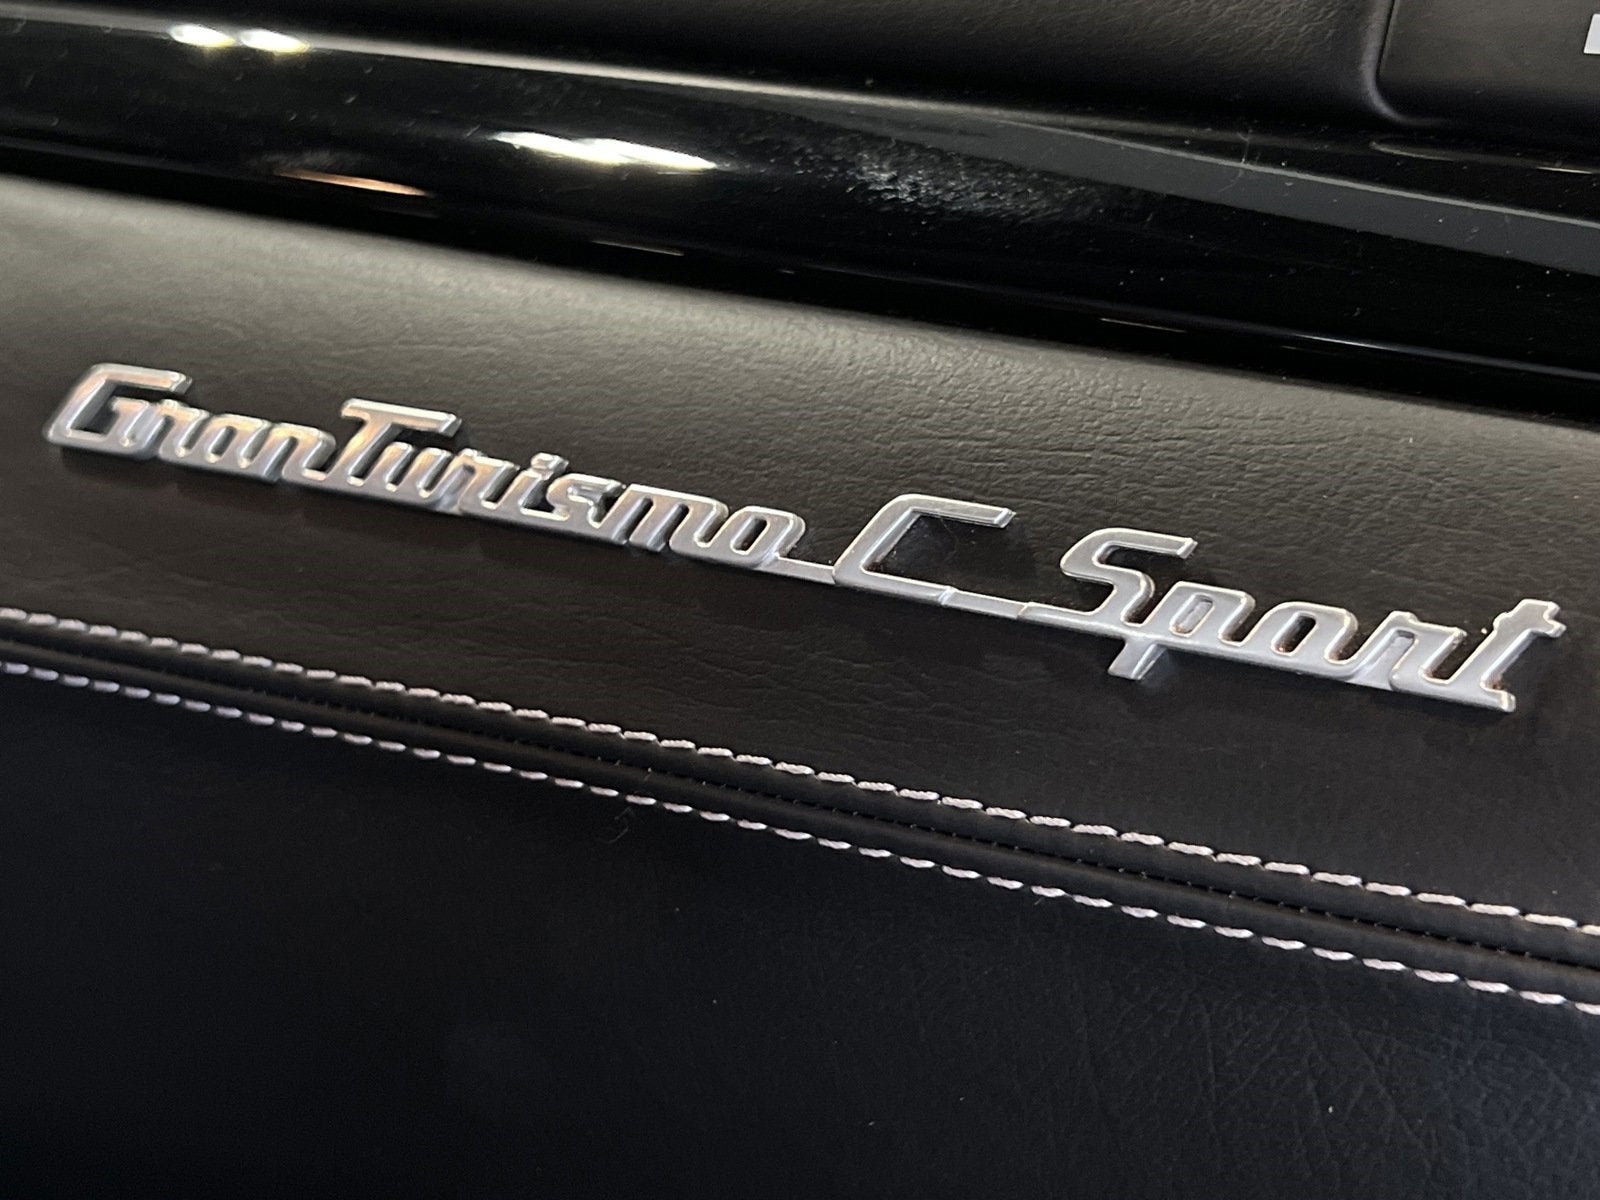 2018 Maserati GranTurismo Convertible Sport